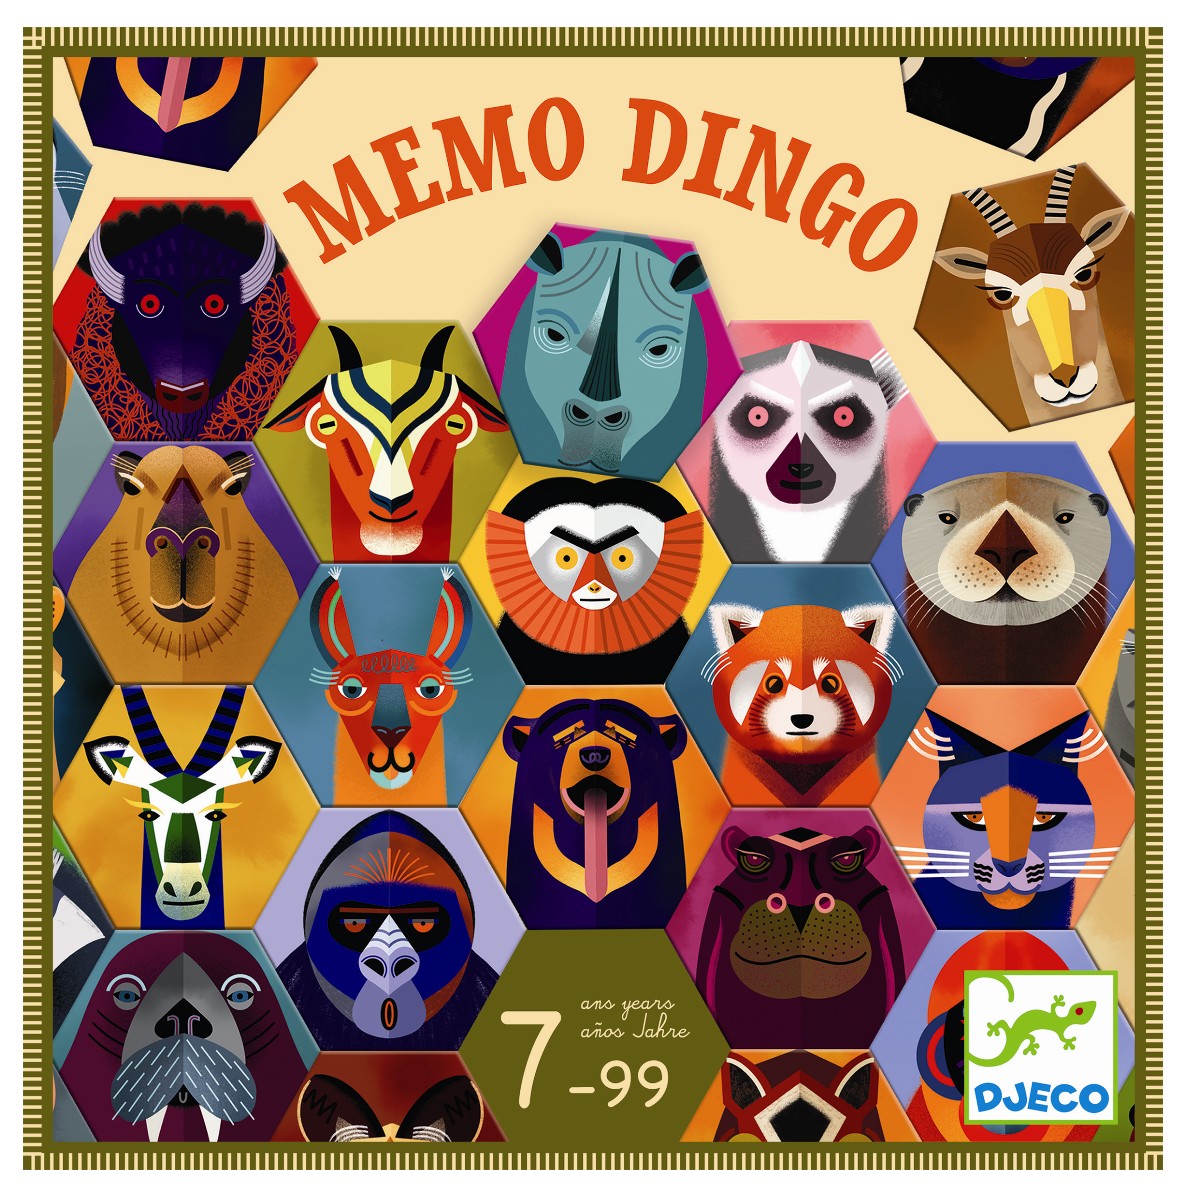 Memo Dingo Brætspil